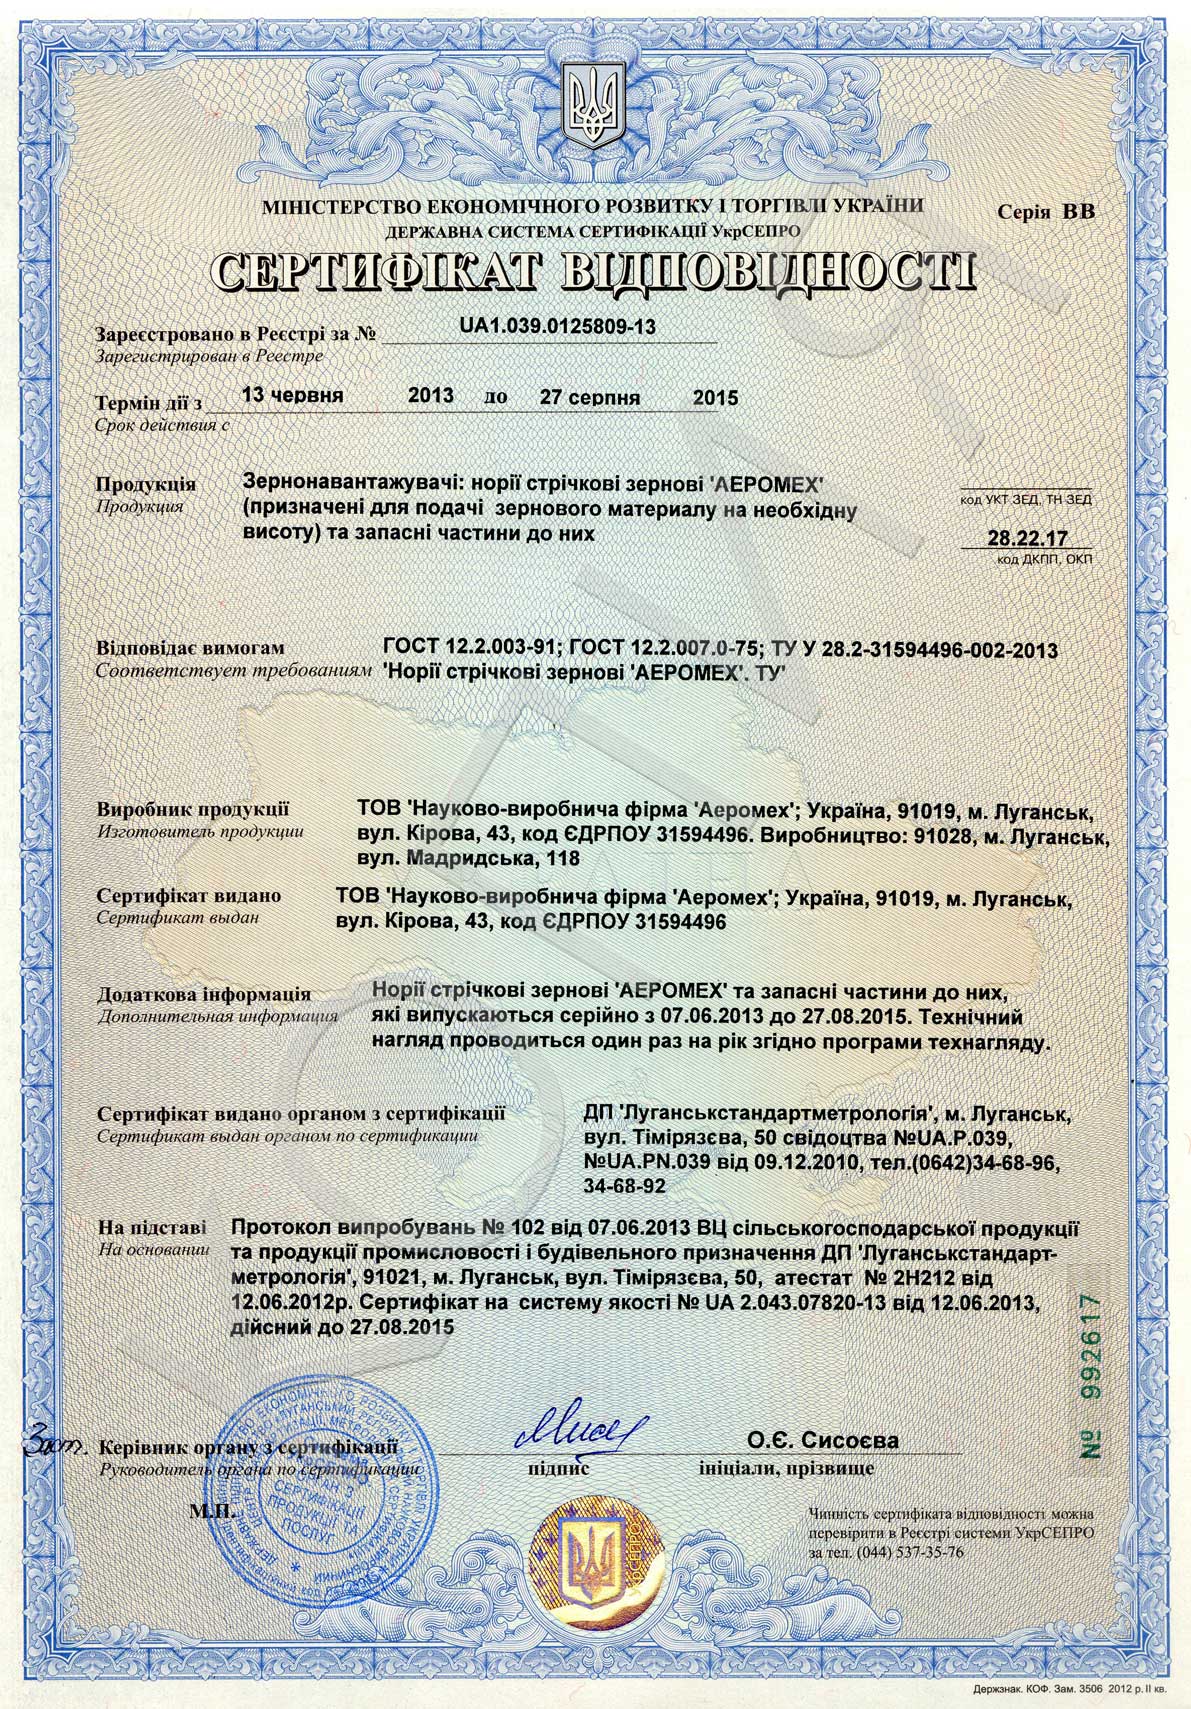 Ukrainian certificate for grain belt elevators